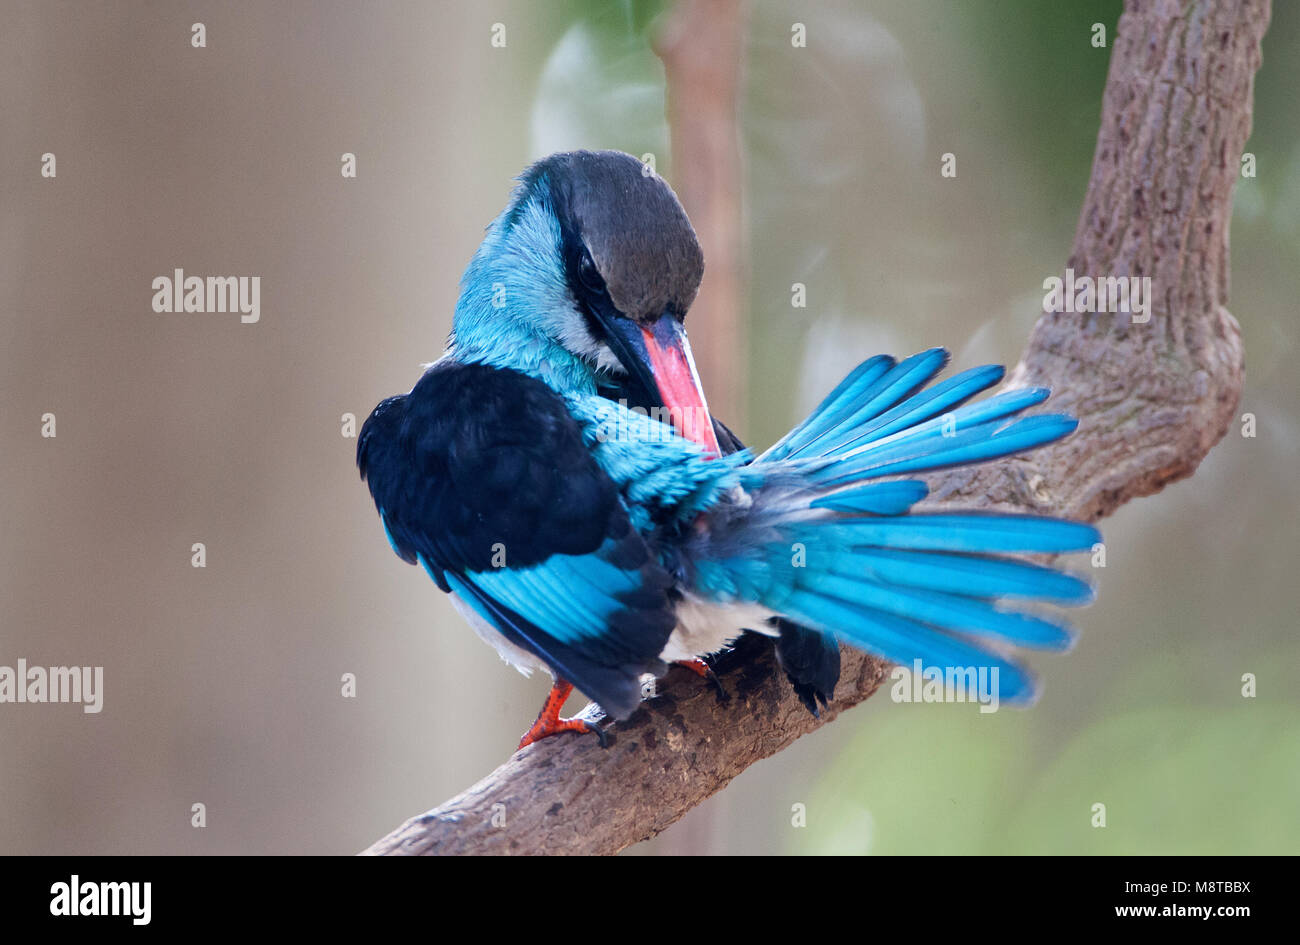 Poetsende Teugelijsvogel; Azul-breasted Kingfisher acicalarse Foto de stock